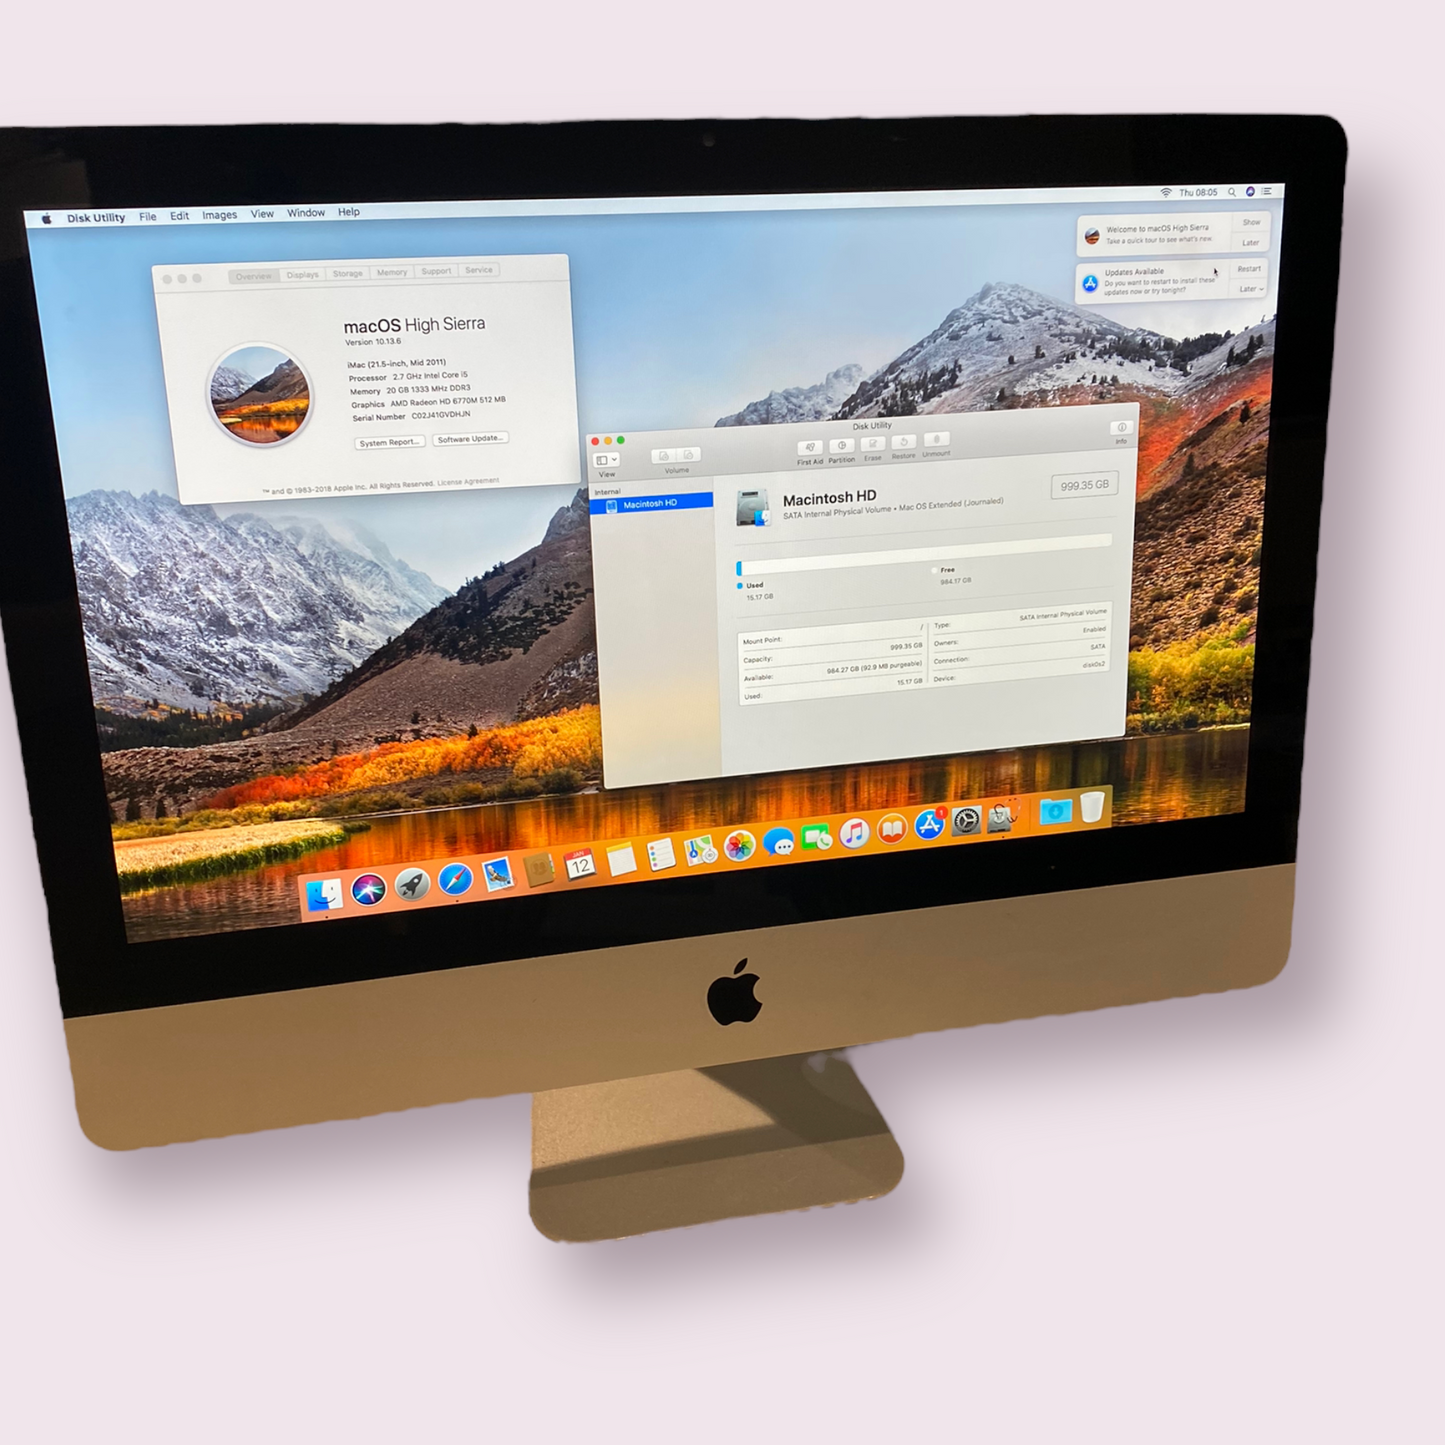 Apple iMac 21.5 2011 i5 @ 2.7GHz 1TB HDD 20GB RAM Radeon 6750 512MB High Sierra